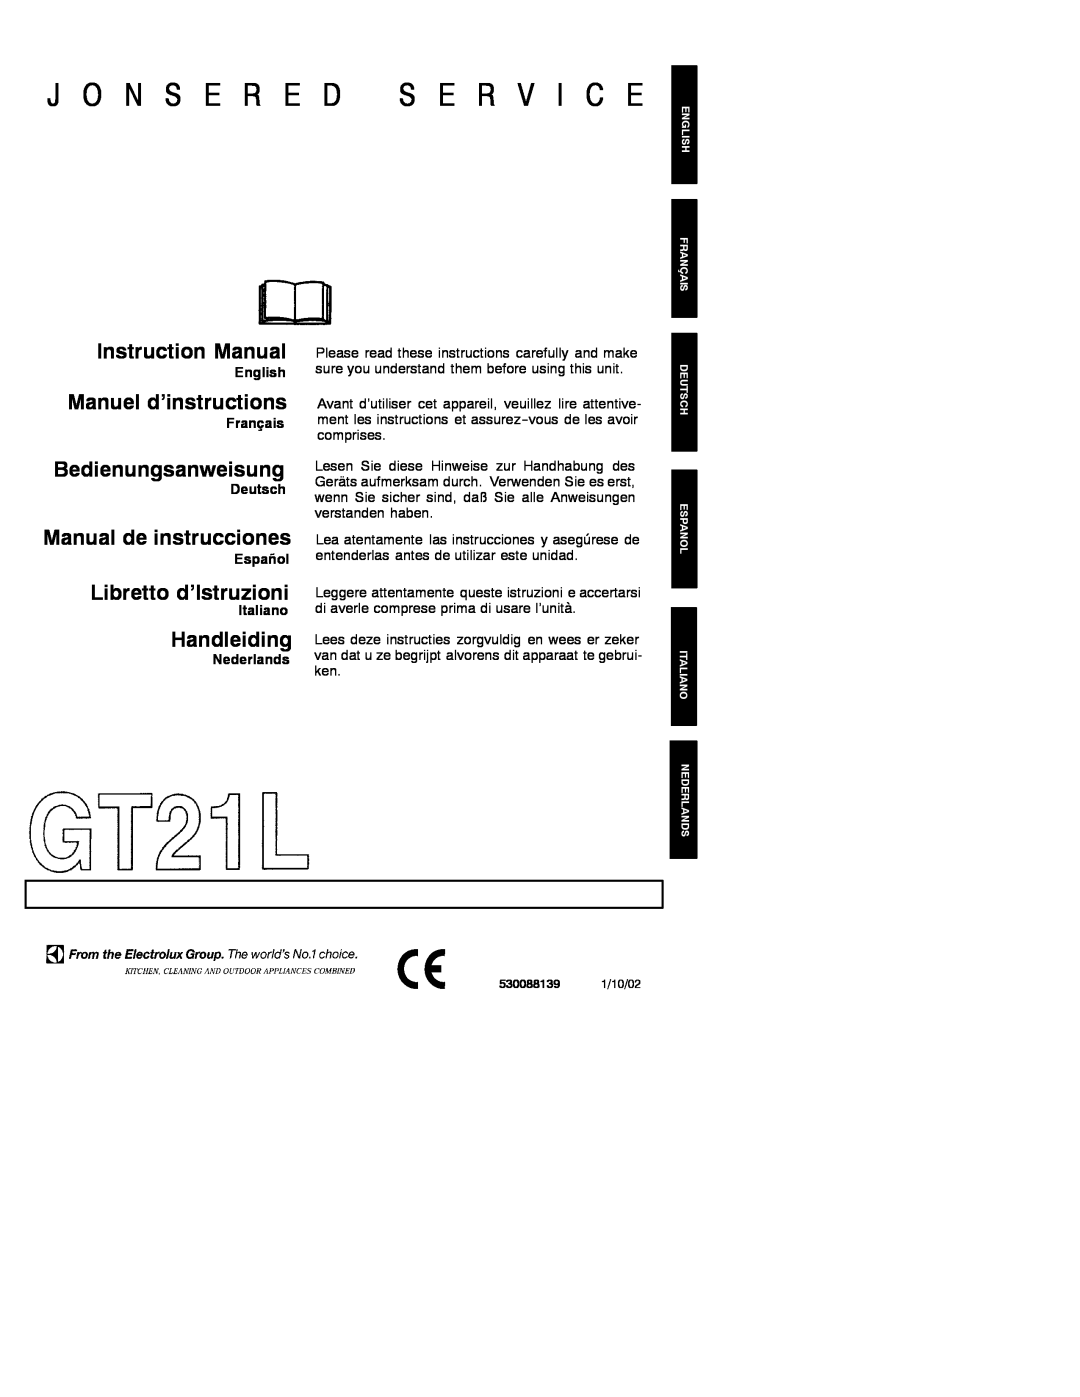 Electrolux GT21L instruction manual English, Français, Deutsch, Español, Italiano, Nederlands, J O N S E R E, Handleiding 